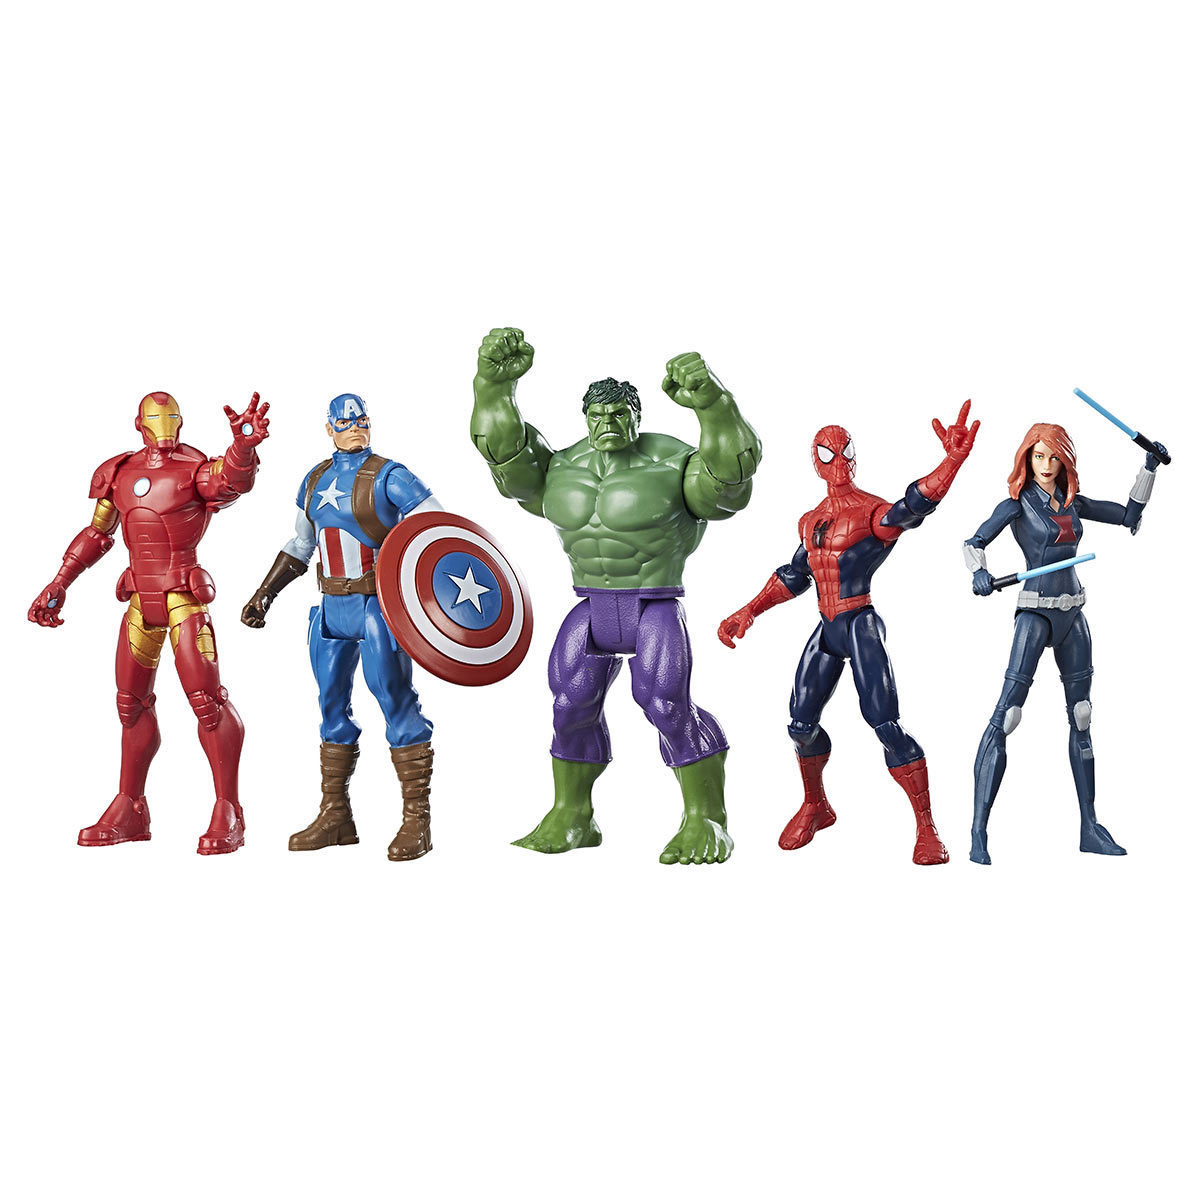 6" (15.2 cm) Marvel Superheroes Assortment - 5 Pack - Marvel Heroes (4+ Years)